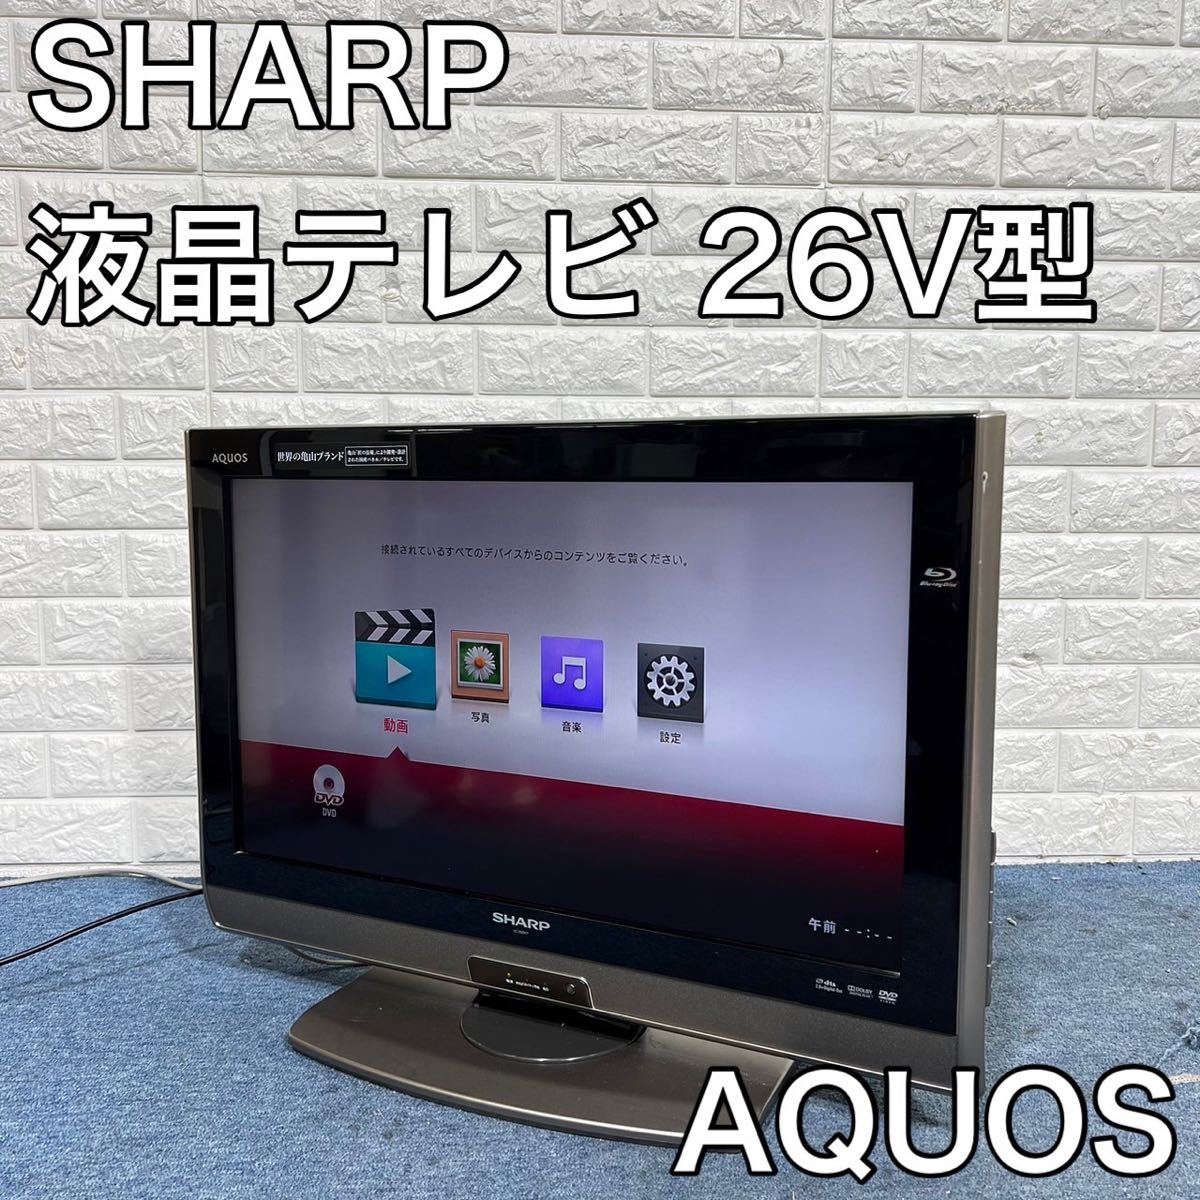 シャープ 26V型 液晶 テレビ AQUOS LC-26DV7-